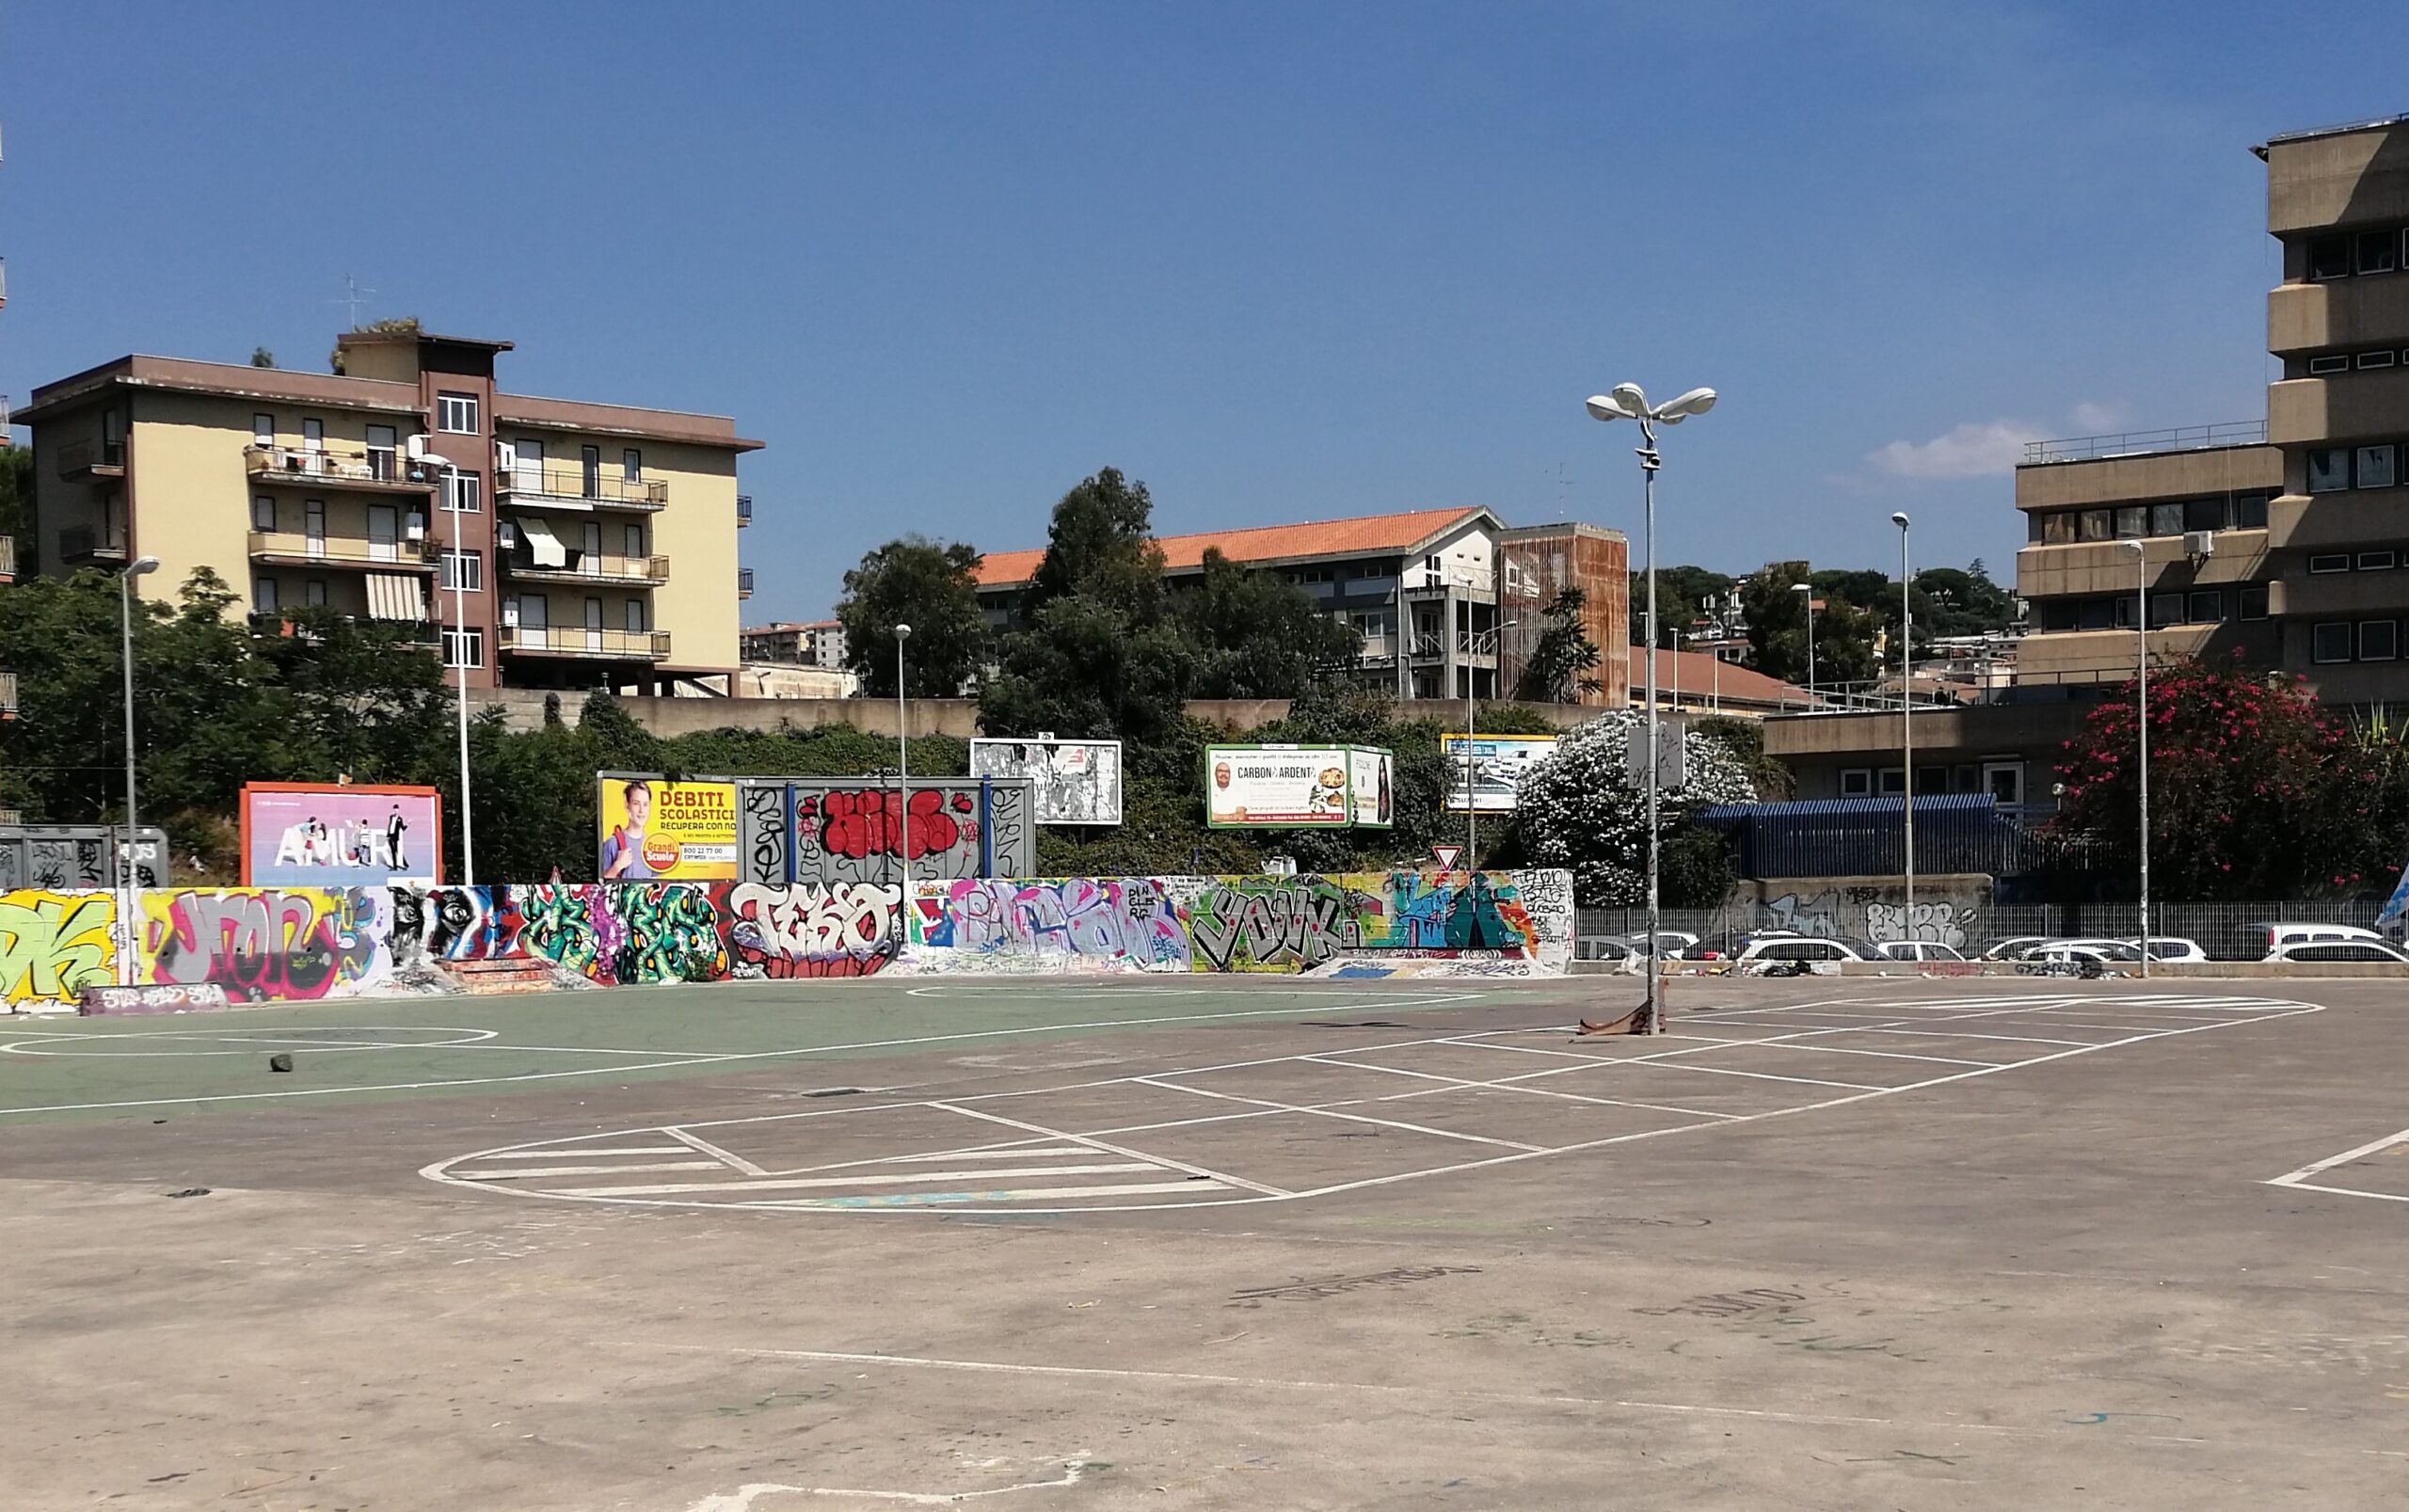 Via Ala, Ferrara: “Riqualifica della zona mediante uno spazio dedicato ai giovani”